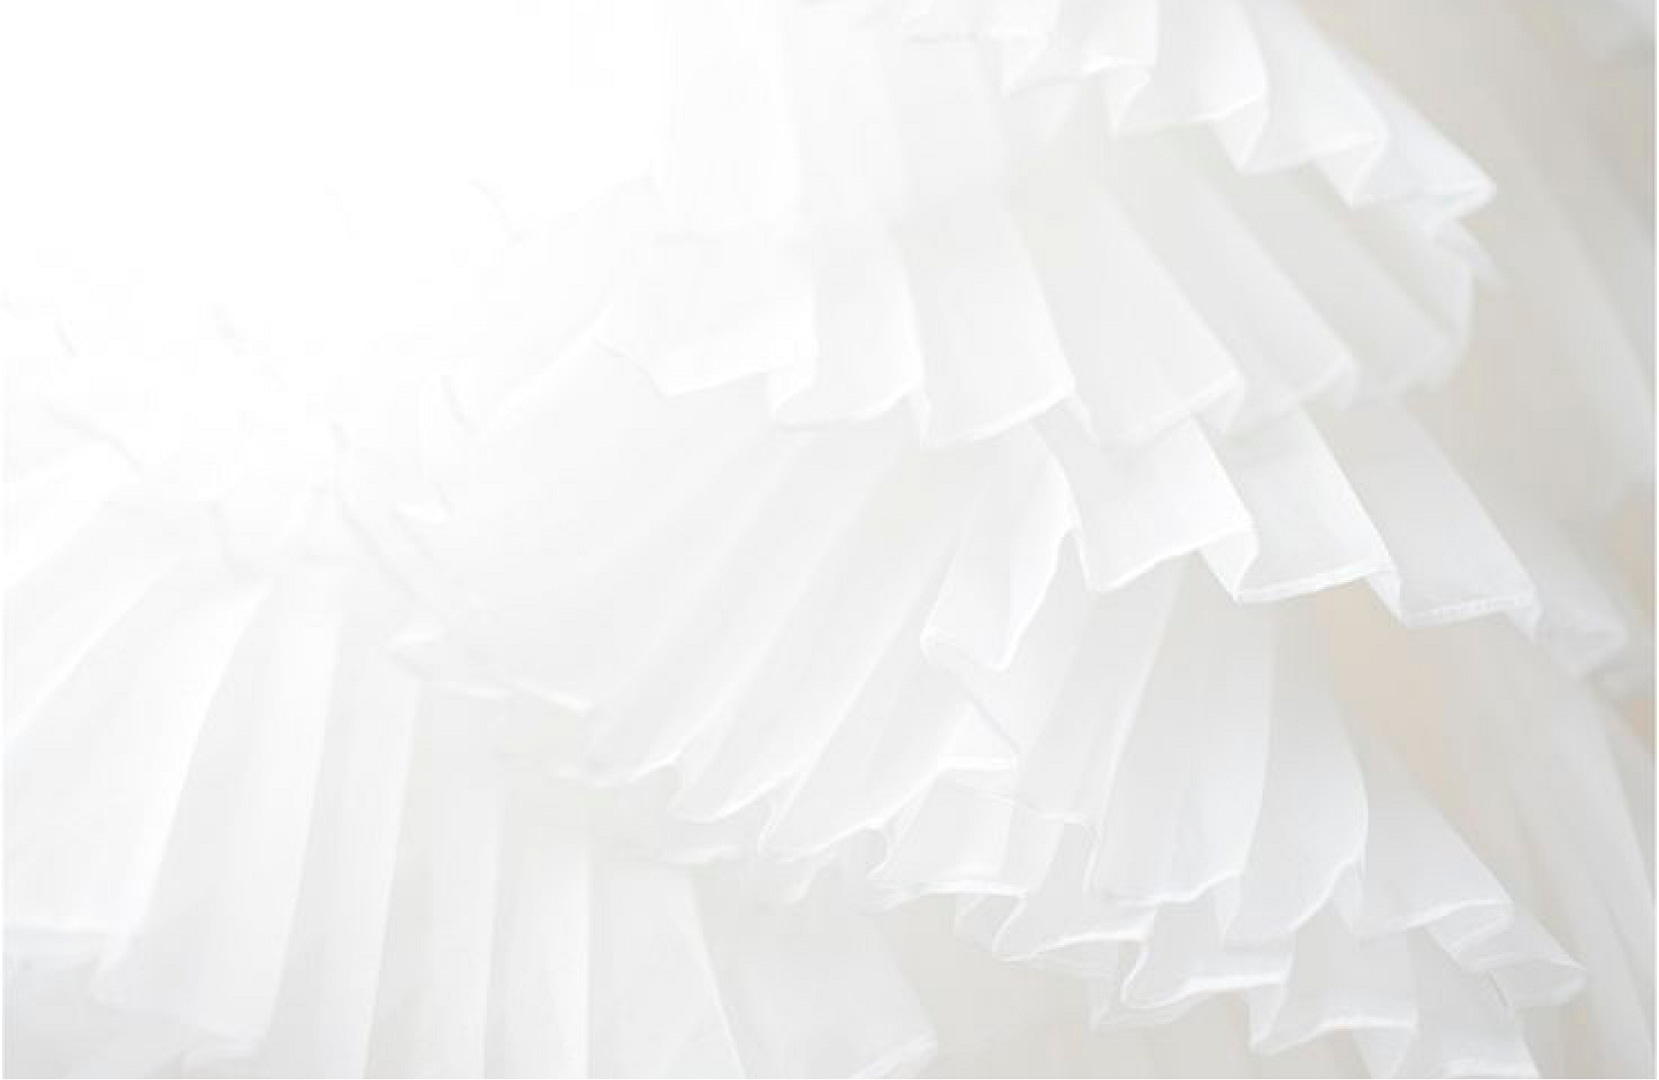 White Pigotta, progettata in collaborazione con UNICEF, è simbolo di innocenza e purezza